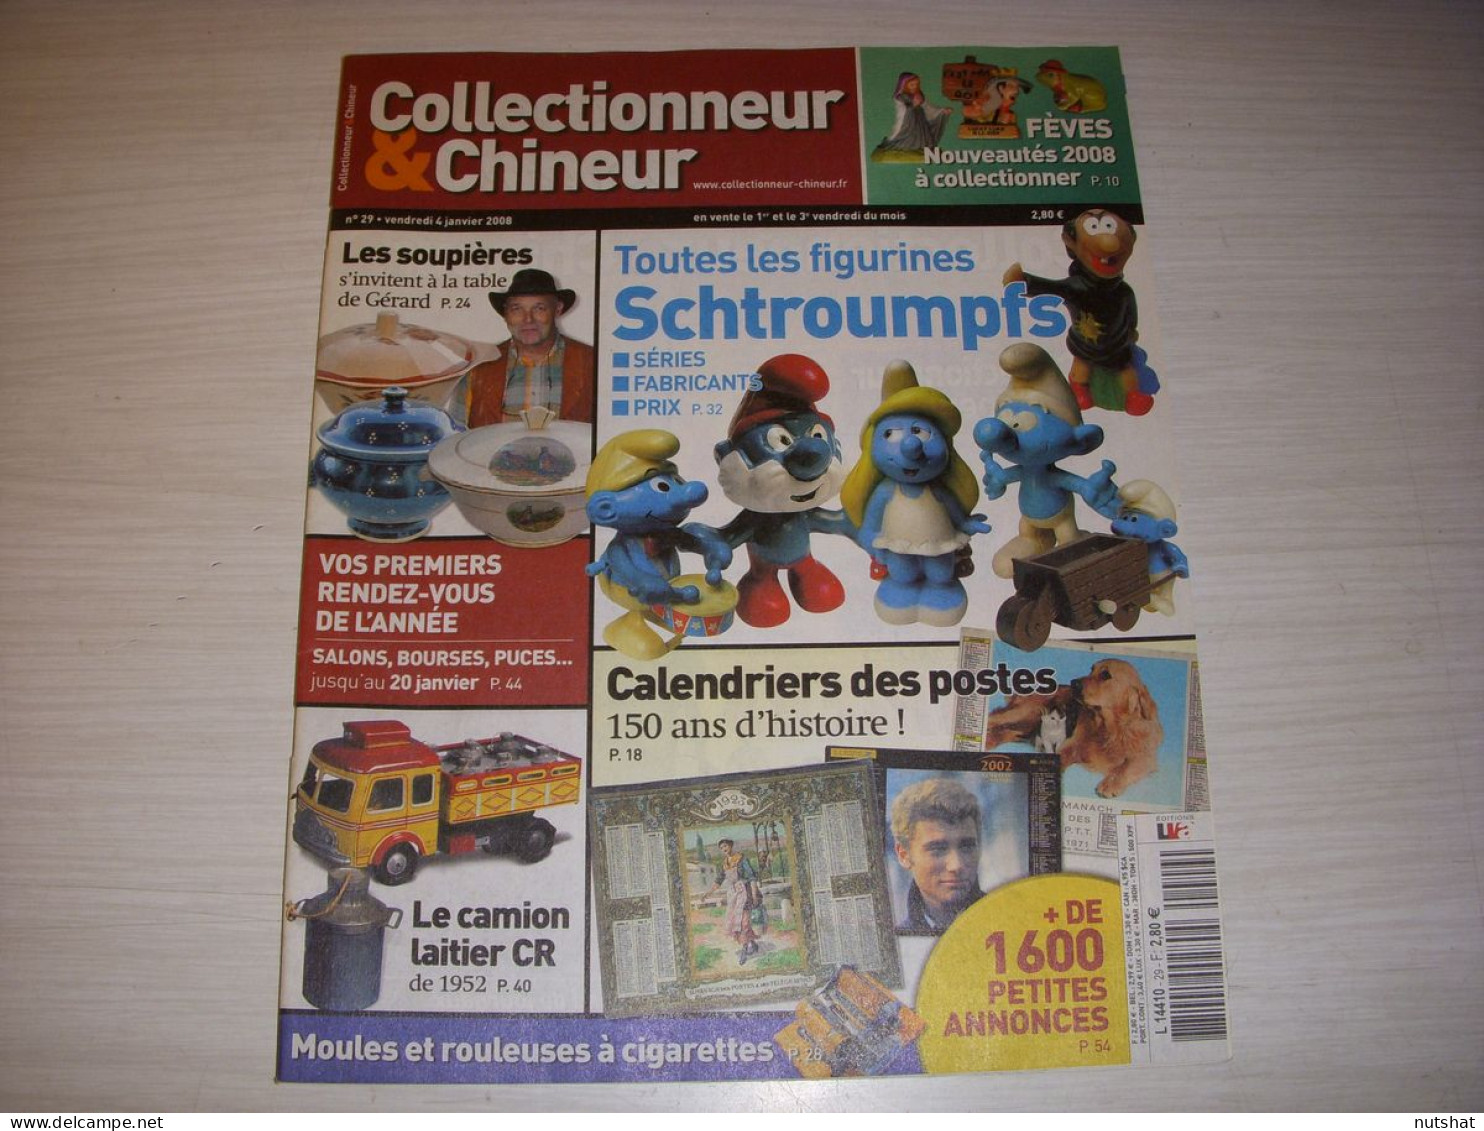 COLLECTIONNEUR CHINEUR 029 04.01.2008 SOUPIERES SCHTROUMPFS CALENDRIER POSTAL - Antigüedades & Colecciones